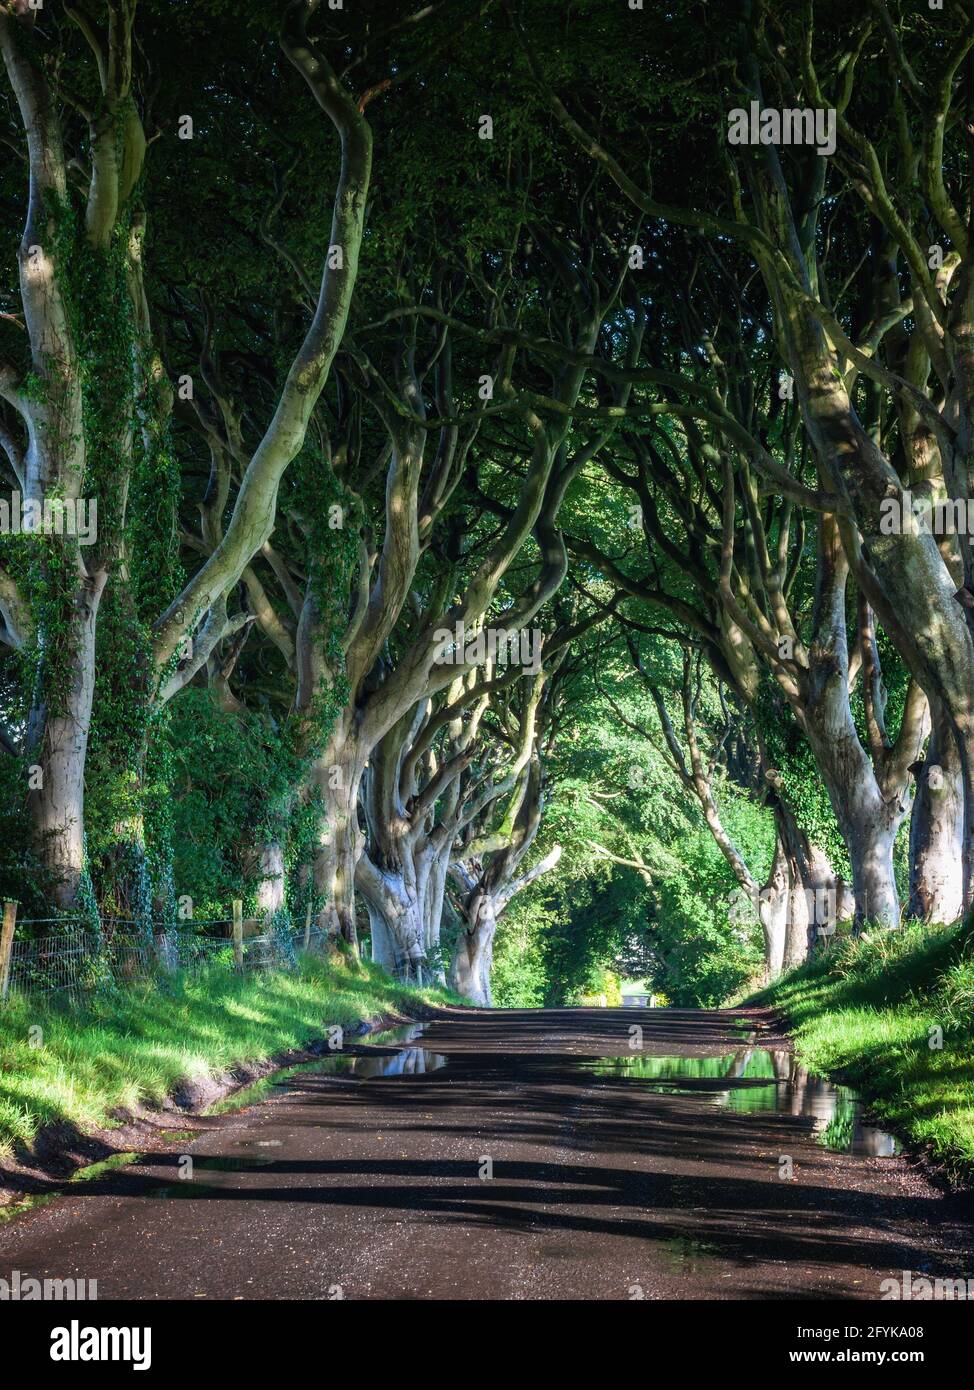 La carretera bordeada de hayas del siglo 18th conocida como Dark Hedges en el condado de Antrim, Irlanda del Norte. Un lugar de rodaje para Juego de Tronos. Foto de stock